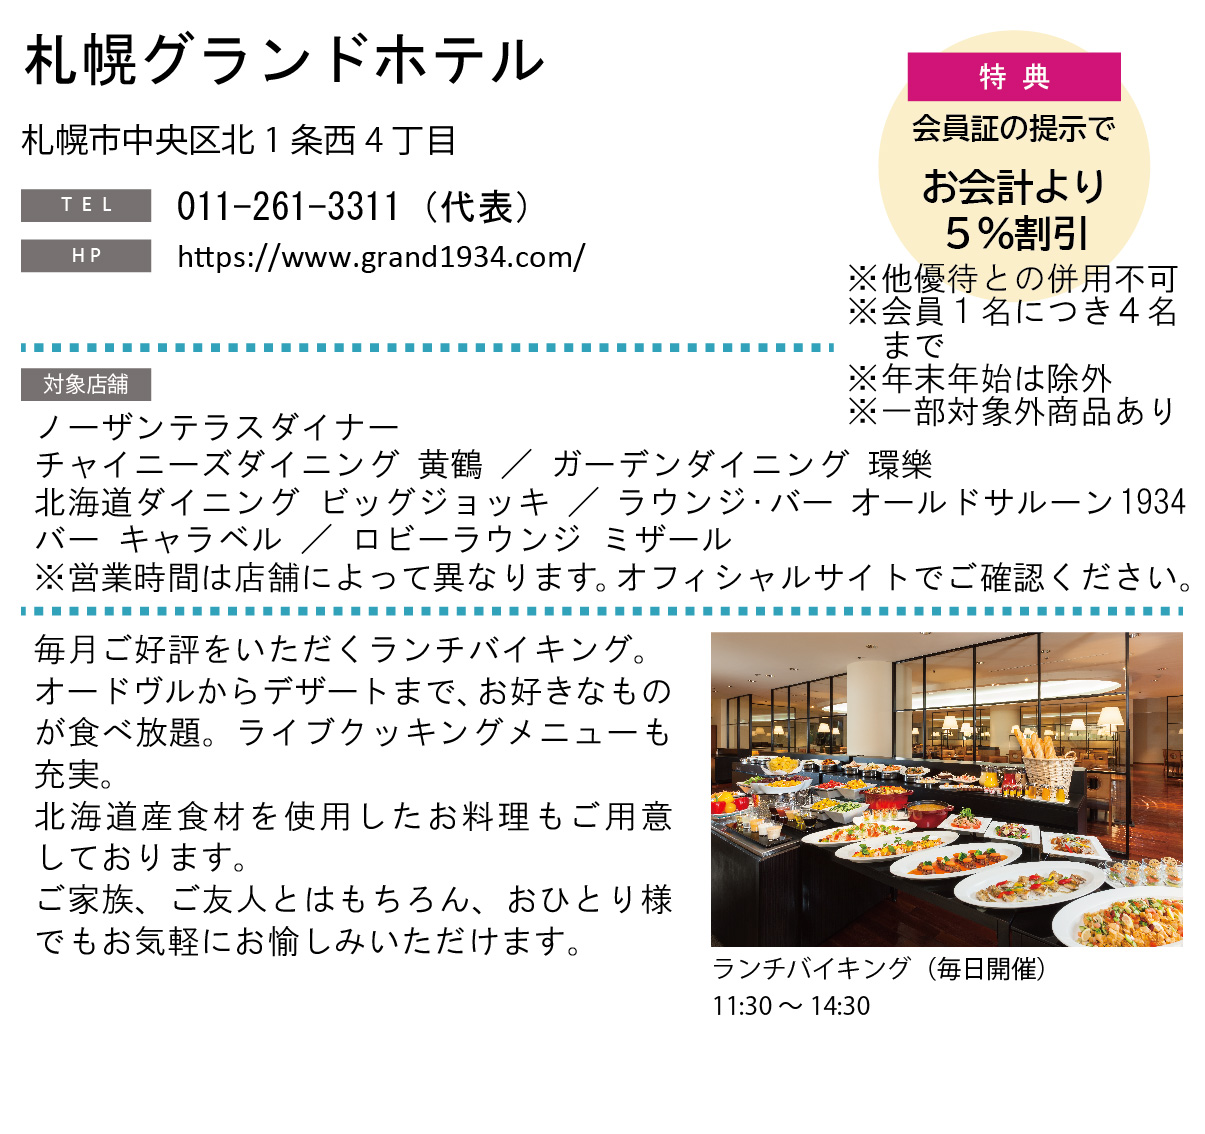 ホテルグルメ特集 Vol.19札幌グランドホテルイメージ